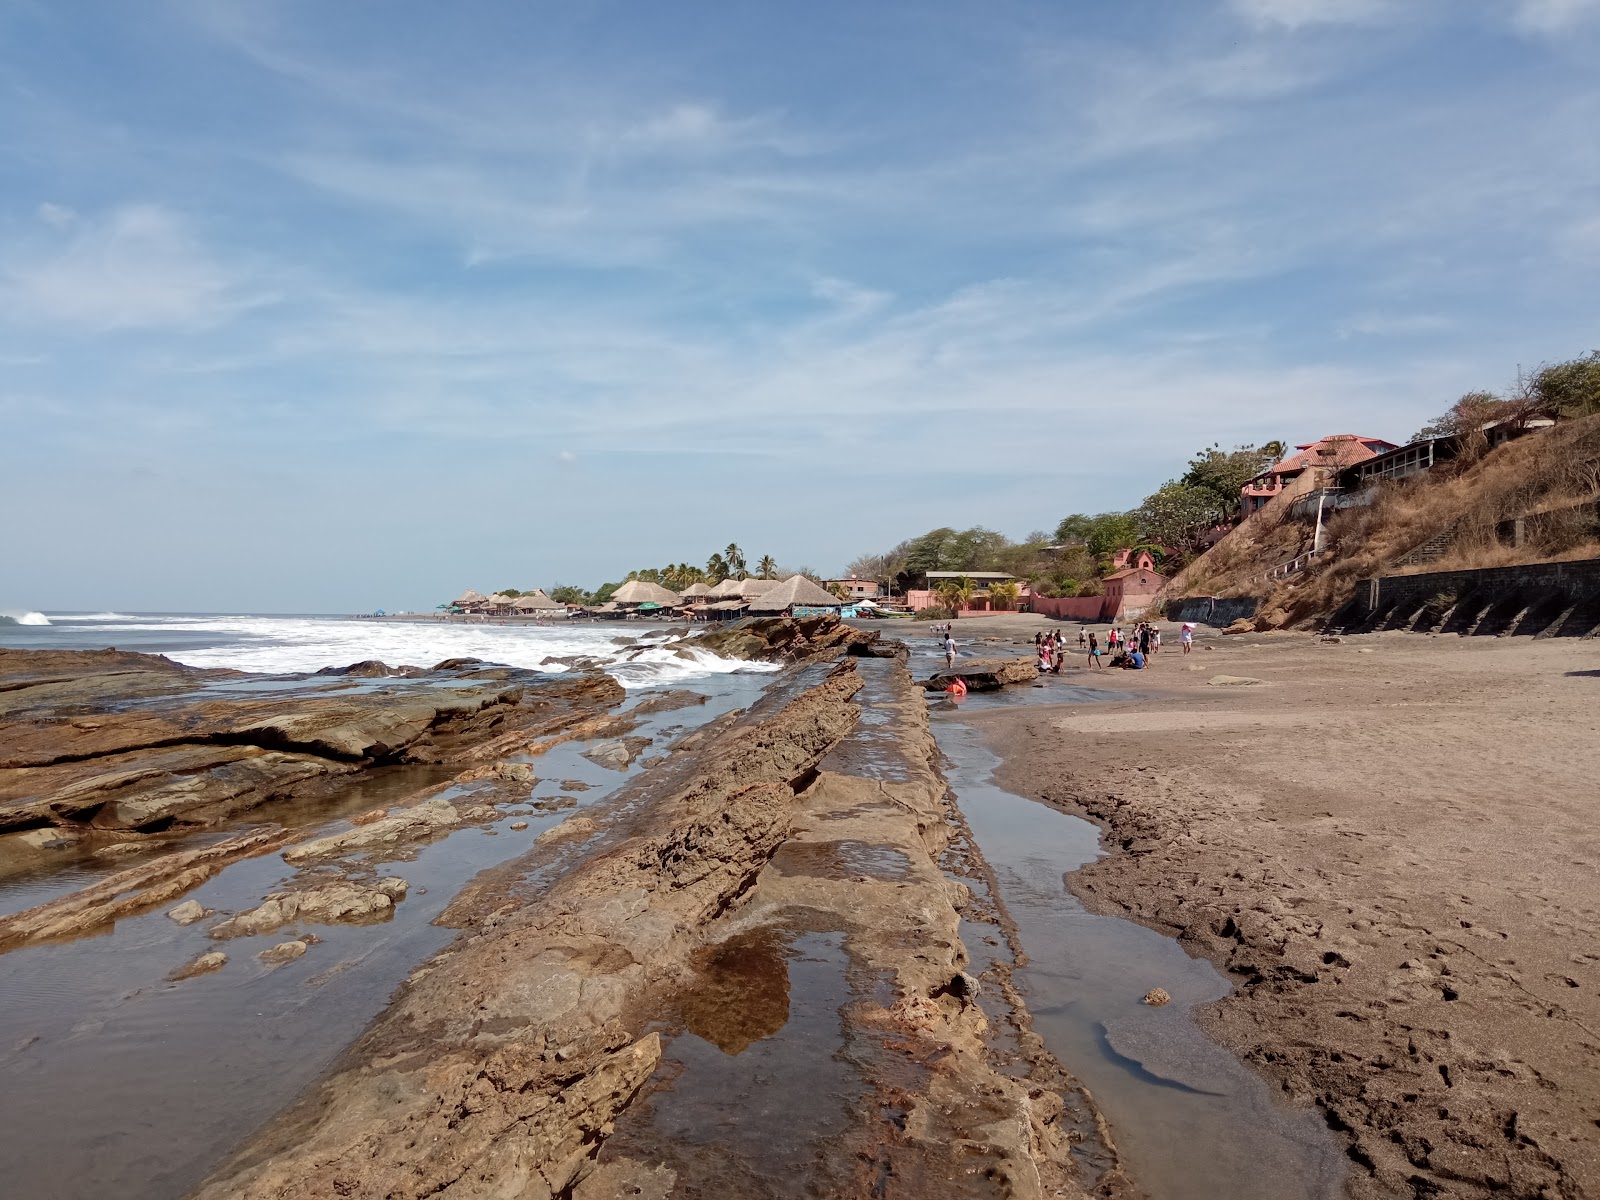 Playa La Boquita'in fotoğrafı uçurumlarla desteklenmiş